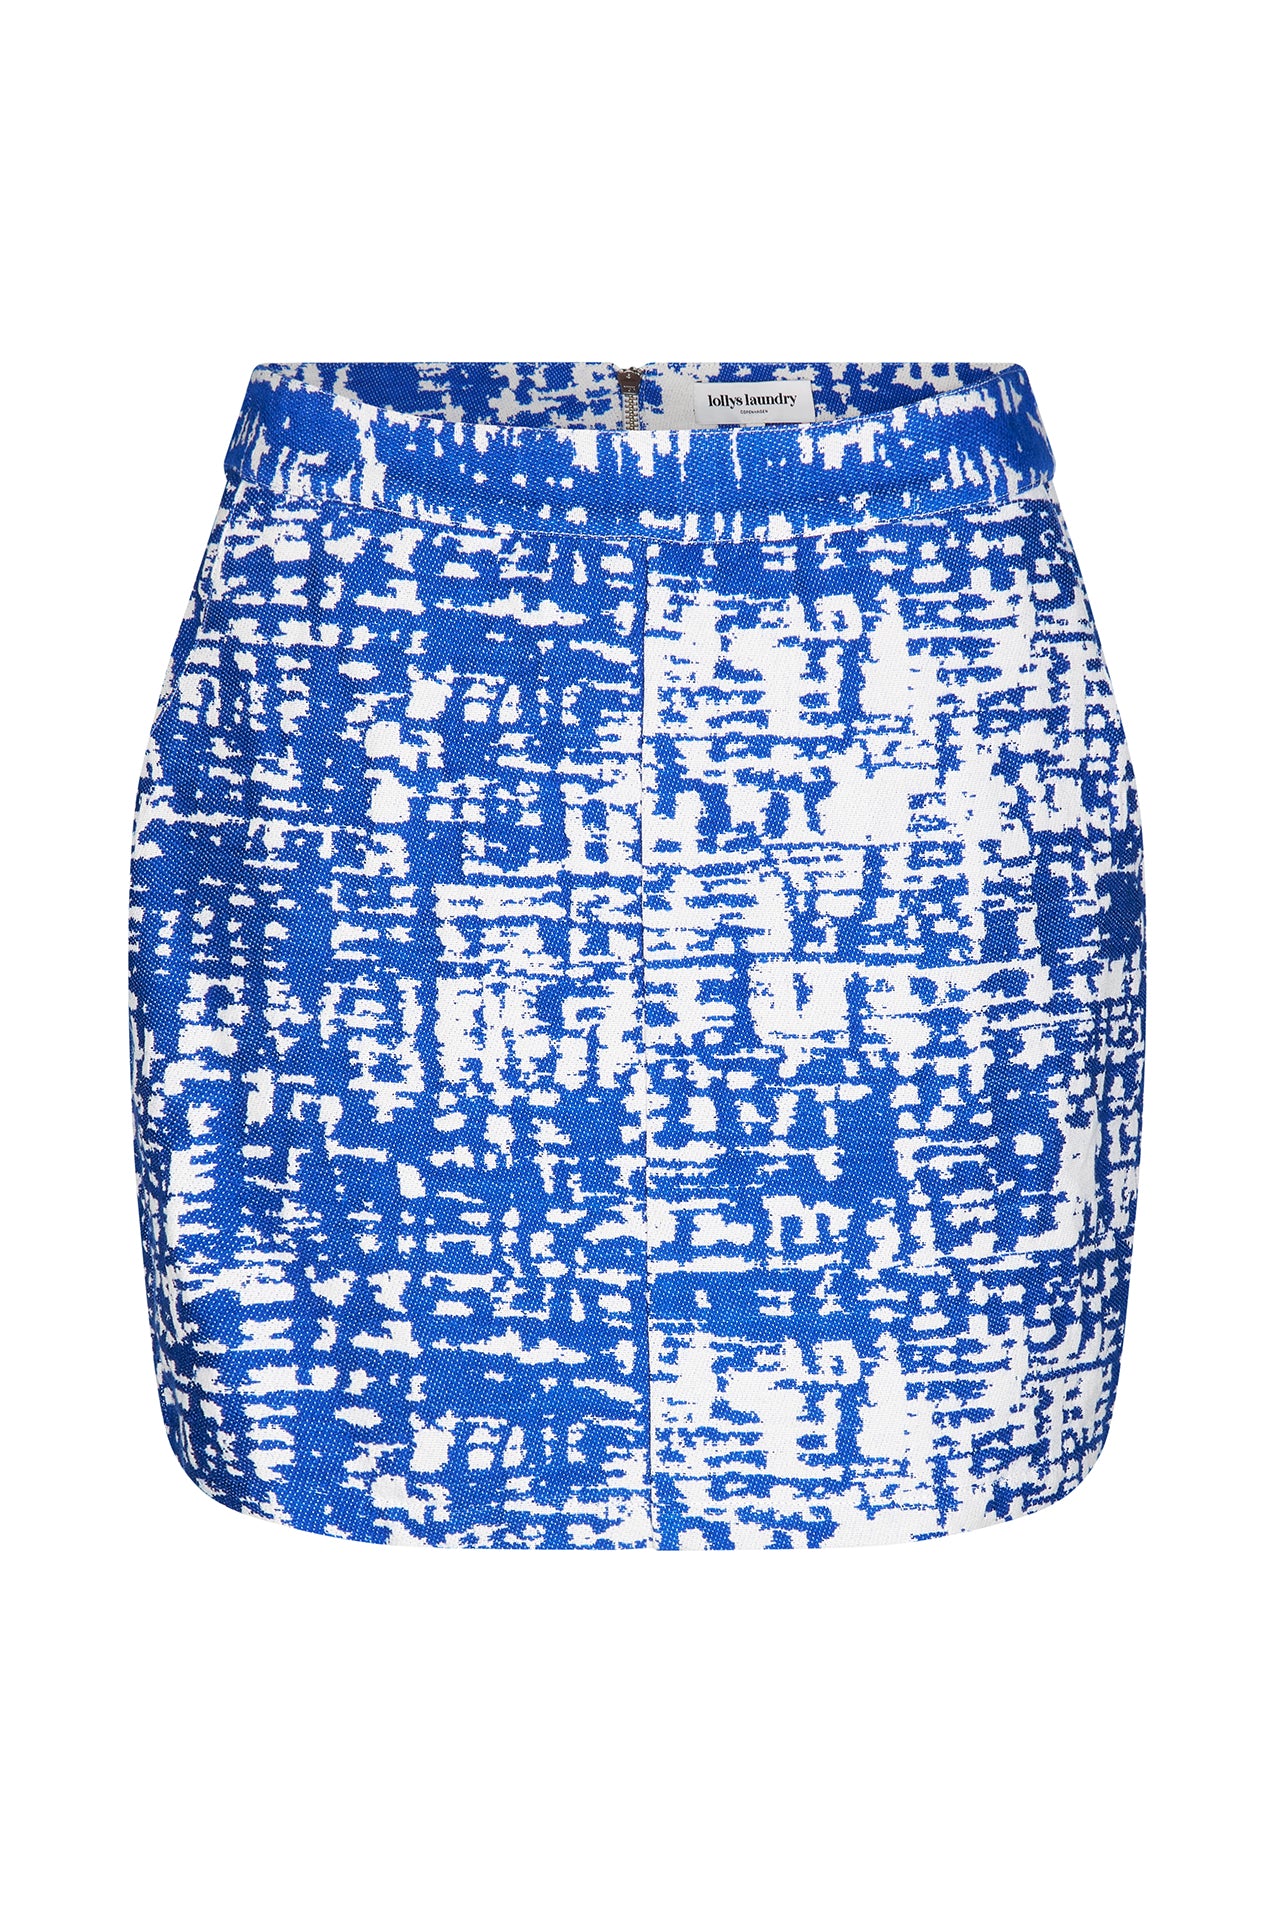 Lollys Laundry Aqua Short Skirt Skirt 20 Blue